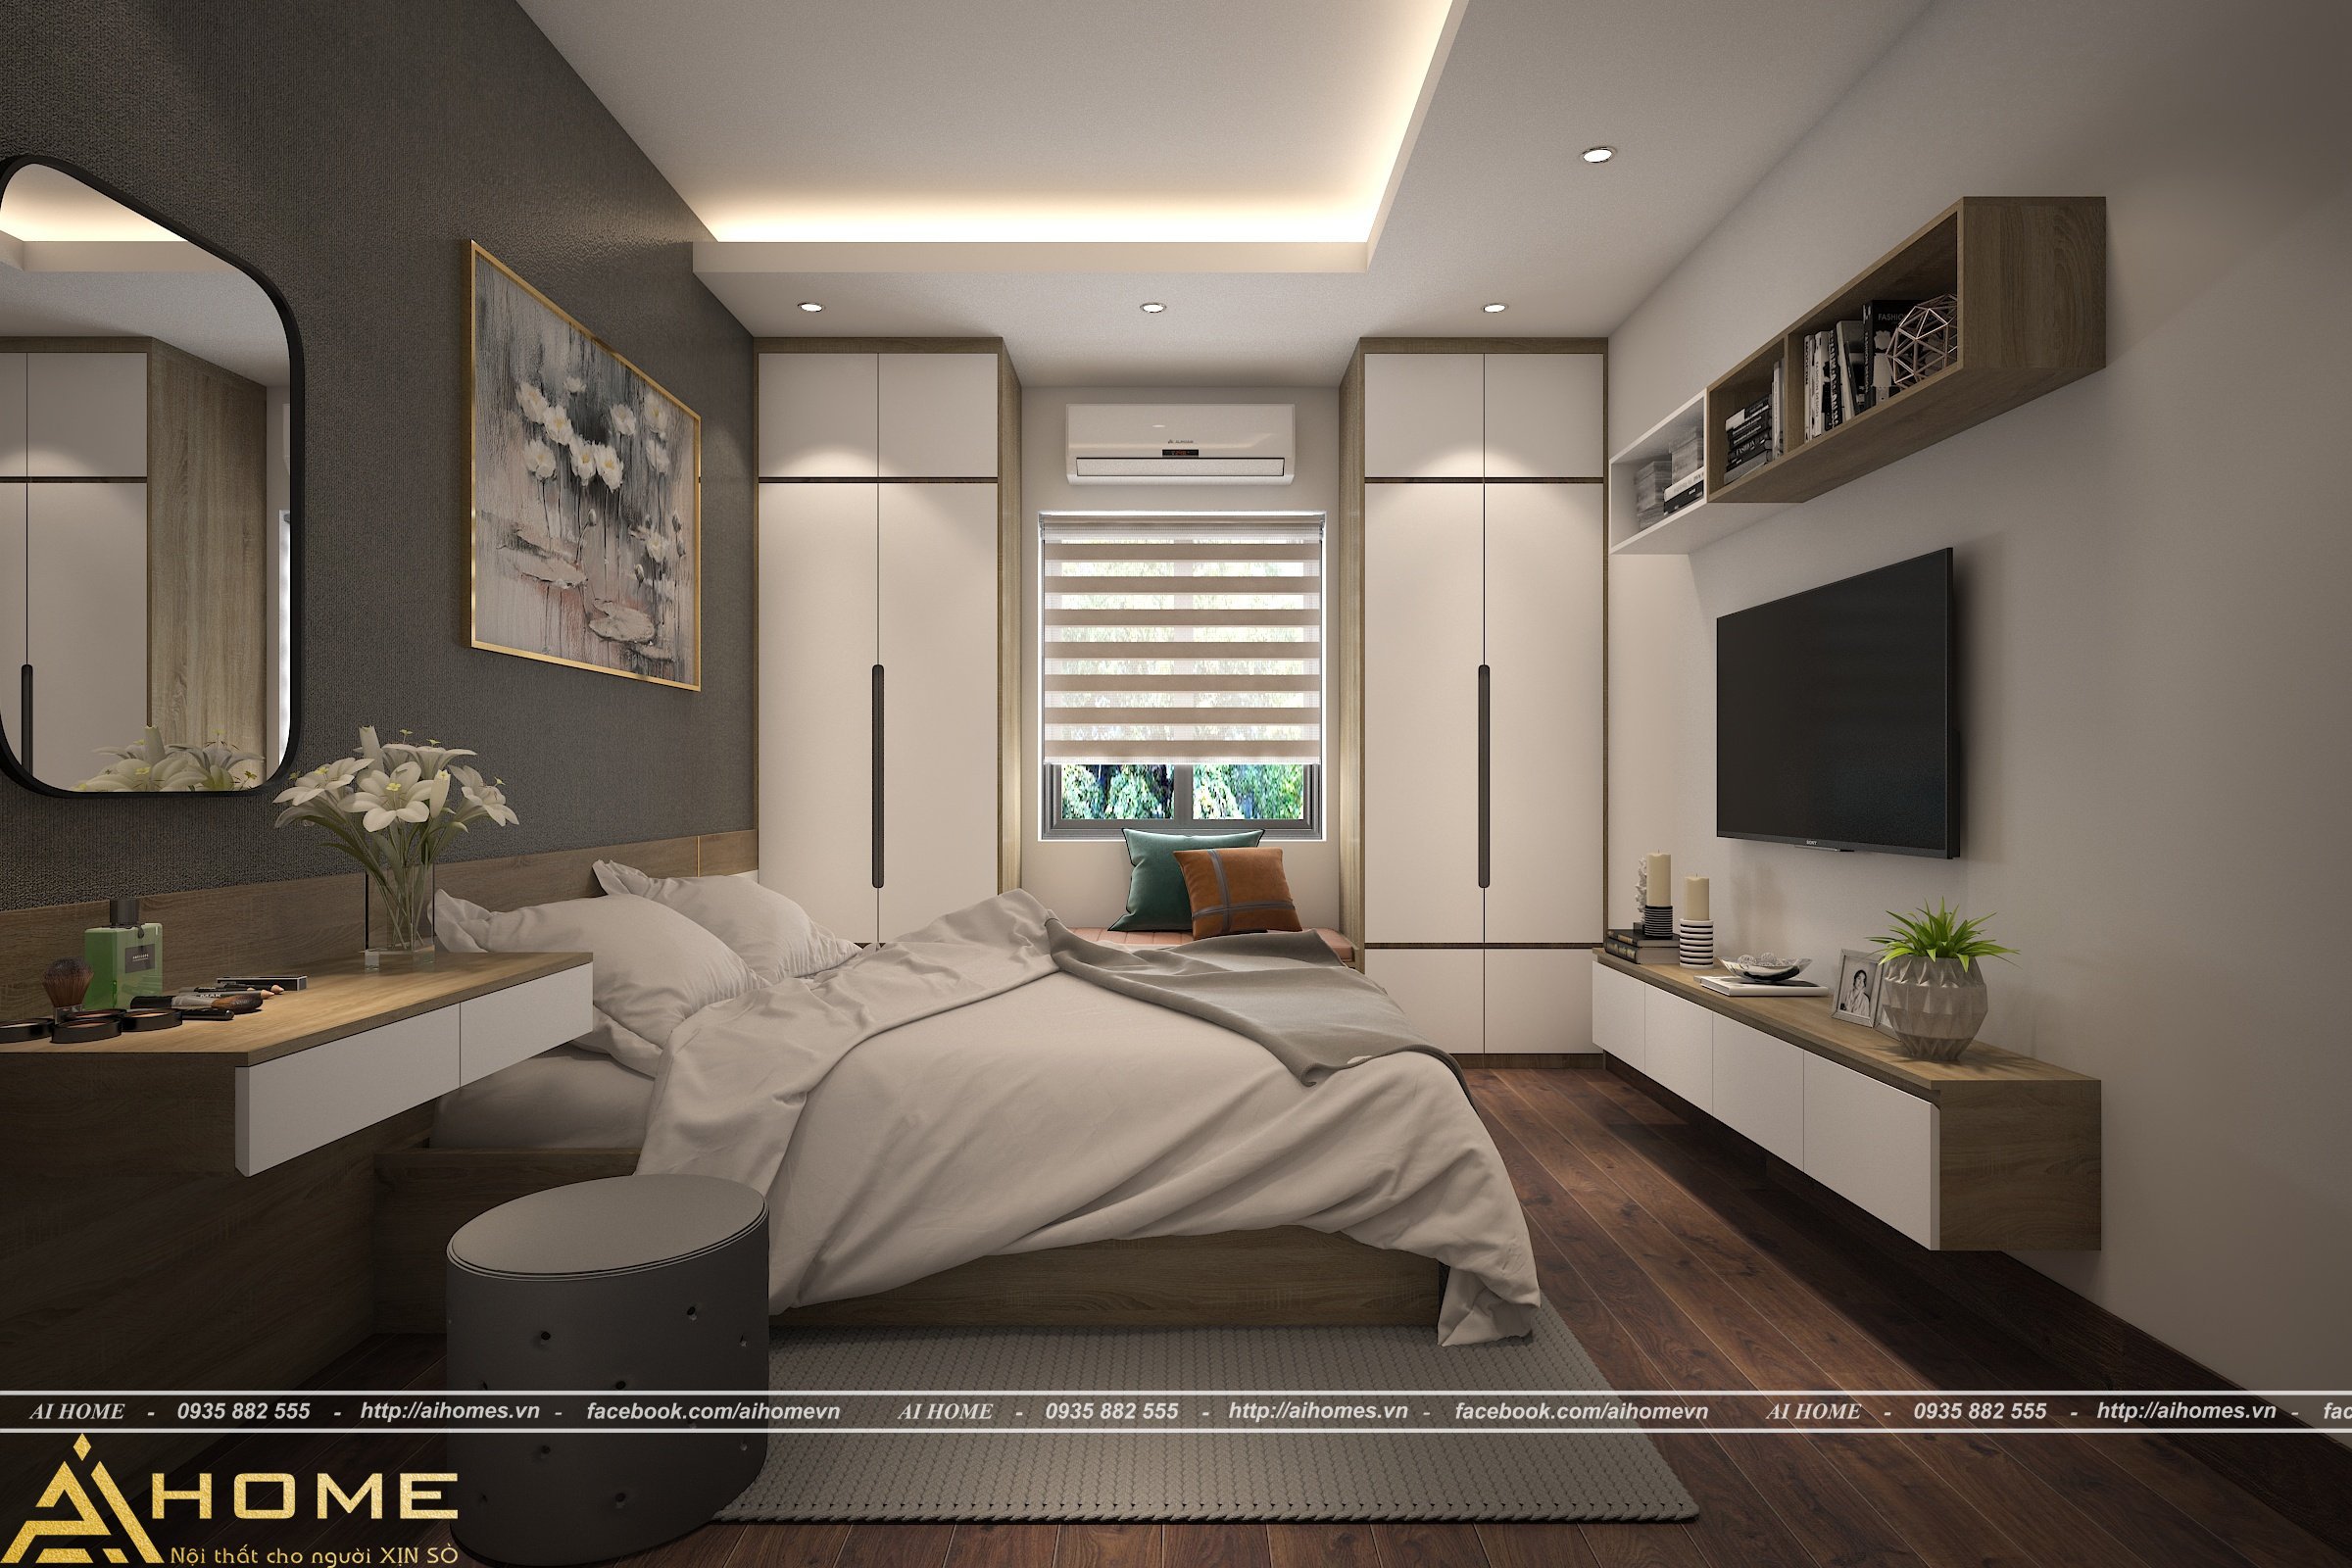 Với sự phát triển của công nghệ, nội thất phòng ngủ master năm 2024 sẽ đem đến cho bạn sự tiện nghi và thoải mái đích thực. Với các thiết bị thông minh và thiết kế đơn giản phù hợp với phong cách hiện đại, bạn sẽ tận hưởng giấc ngủ ngon hơn bao giờ hết.